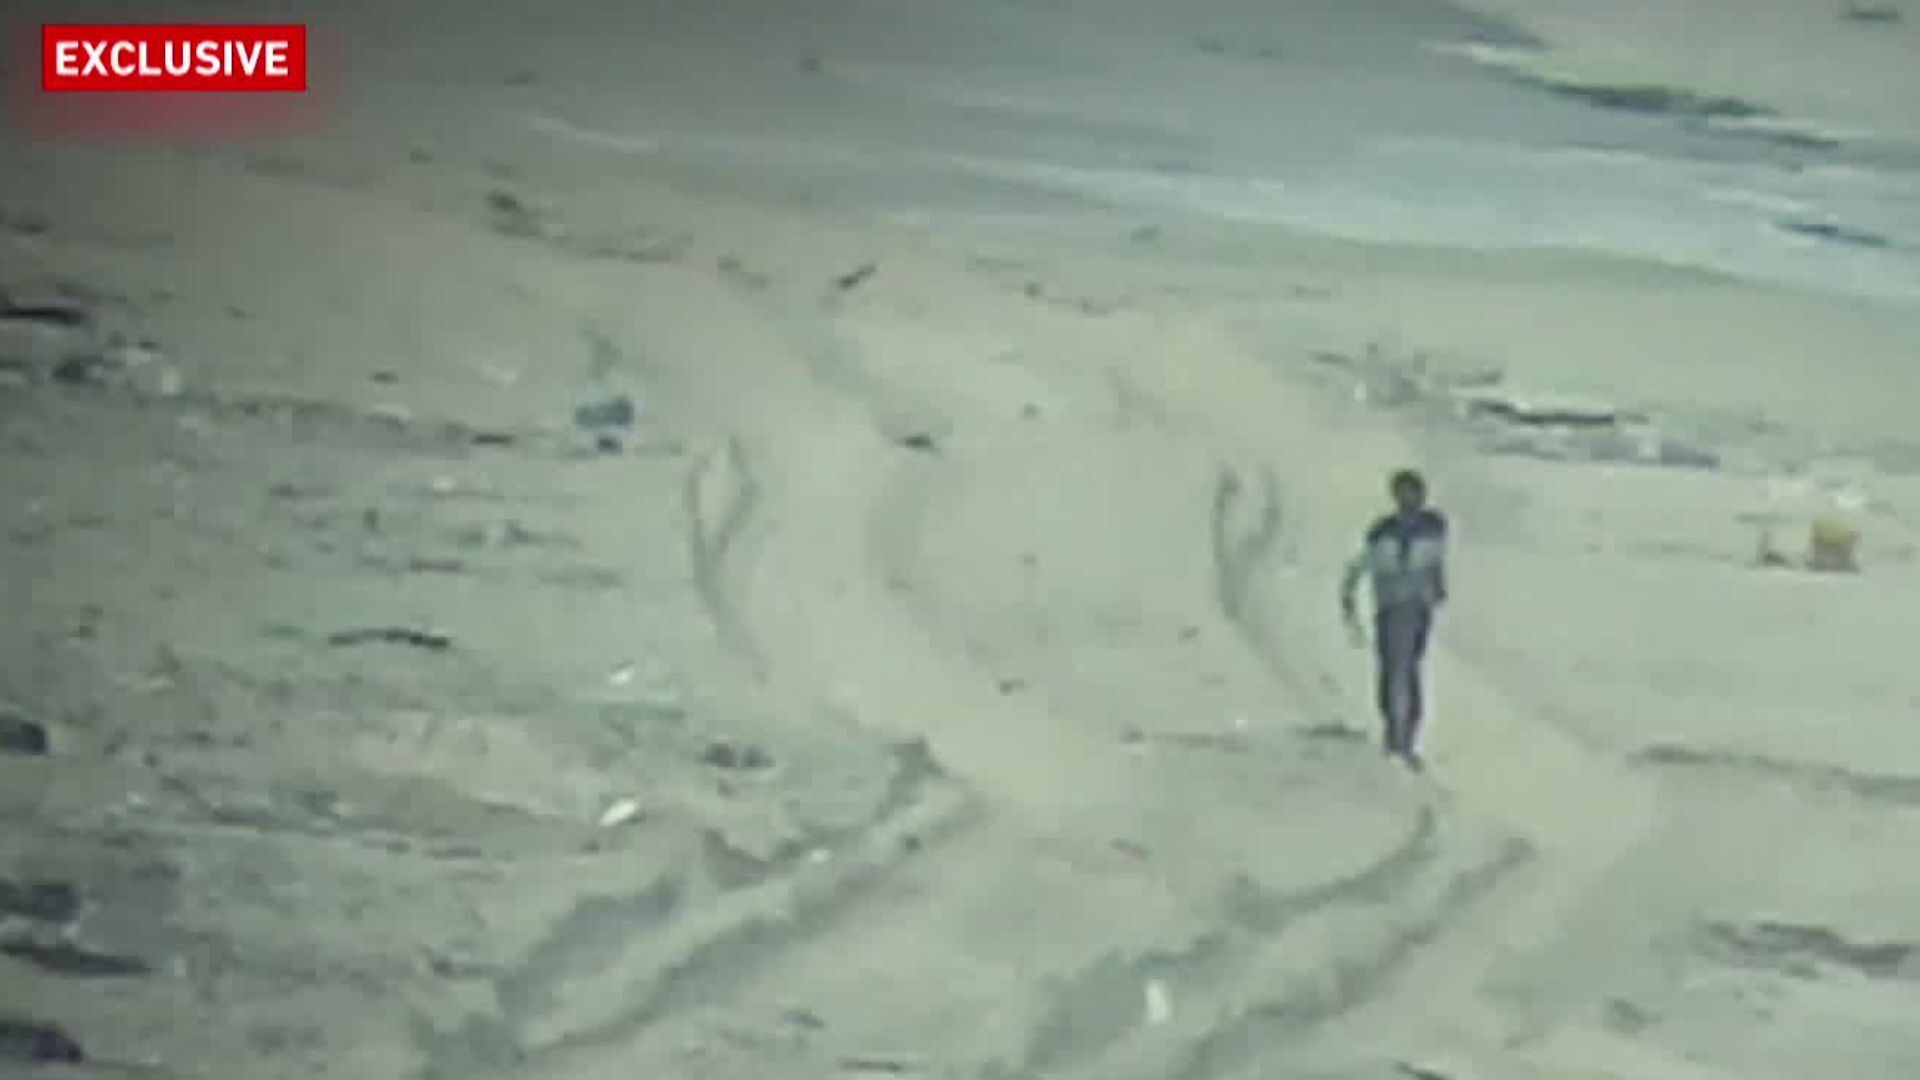 Israeli soldiers shoot dead two unarmed Palestinian men in Gaza: Video